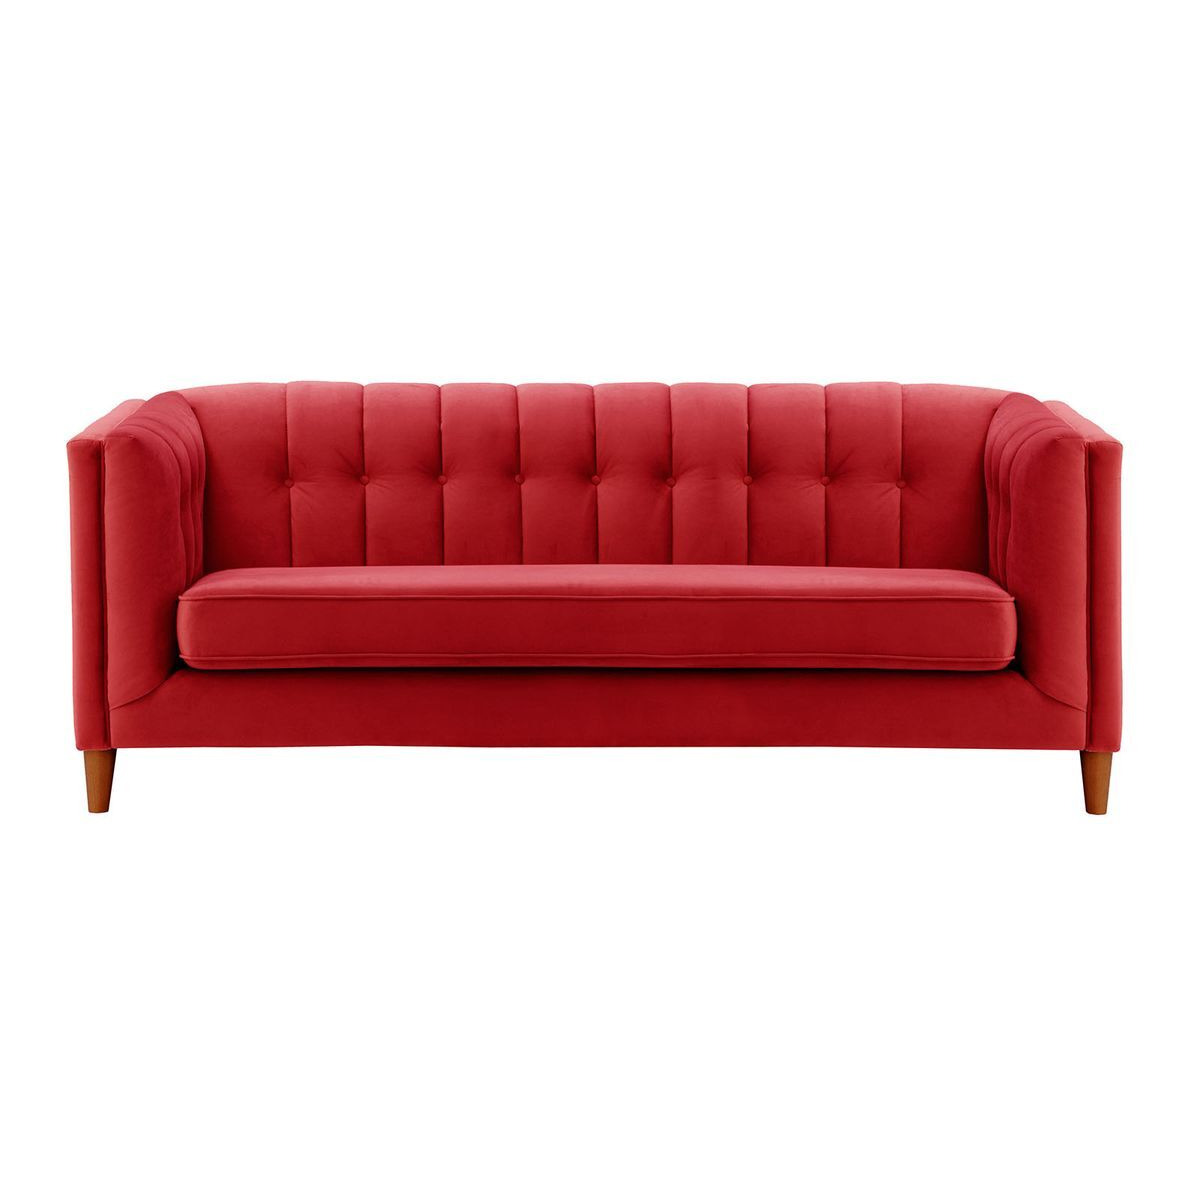 Sodre 3 Seater Sofa, dark red, Leg colour: aveo - image 1